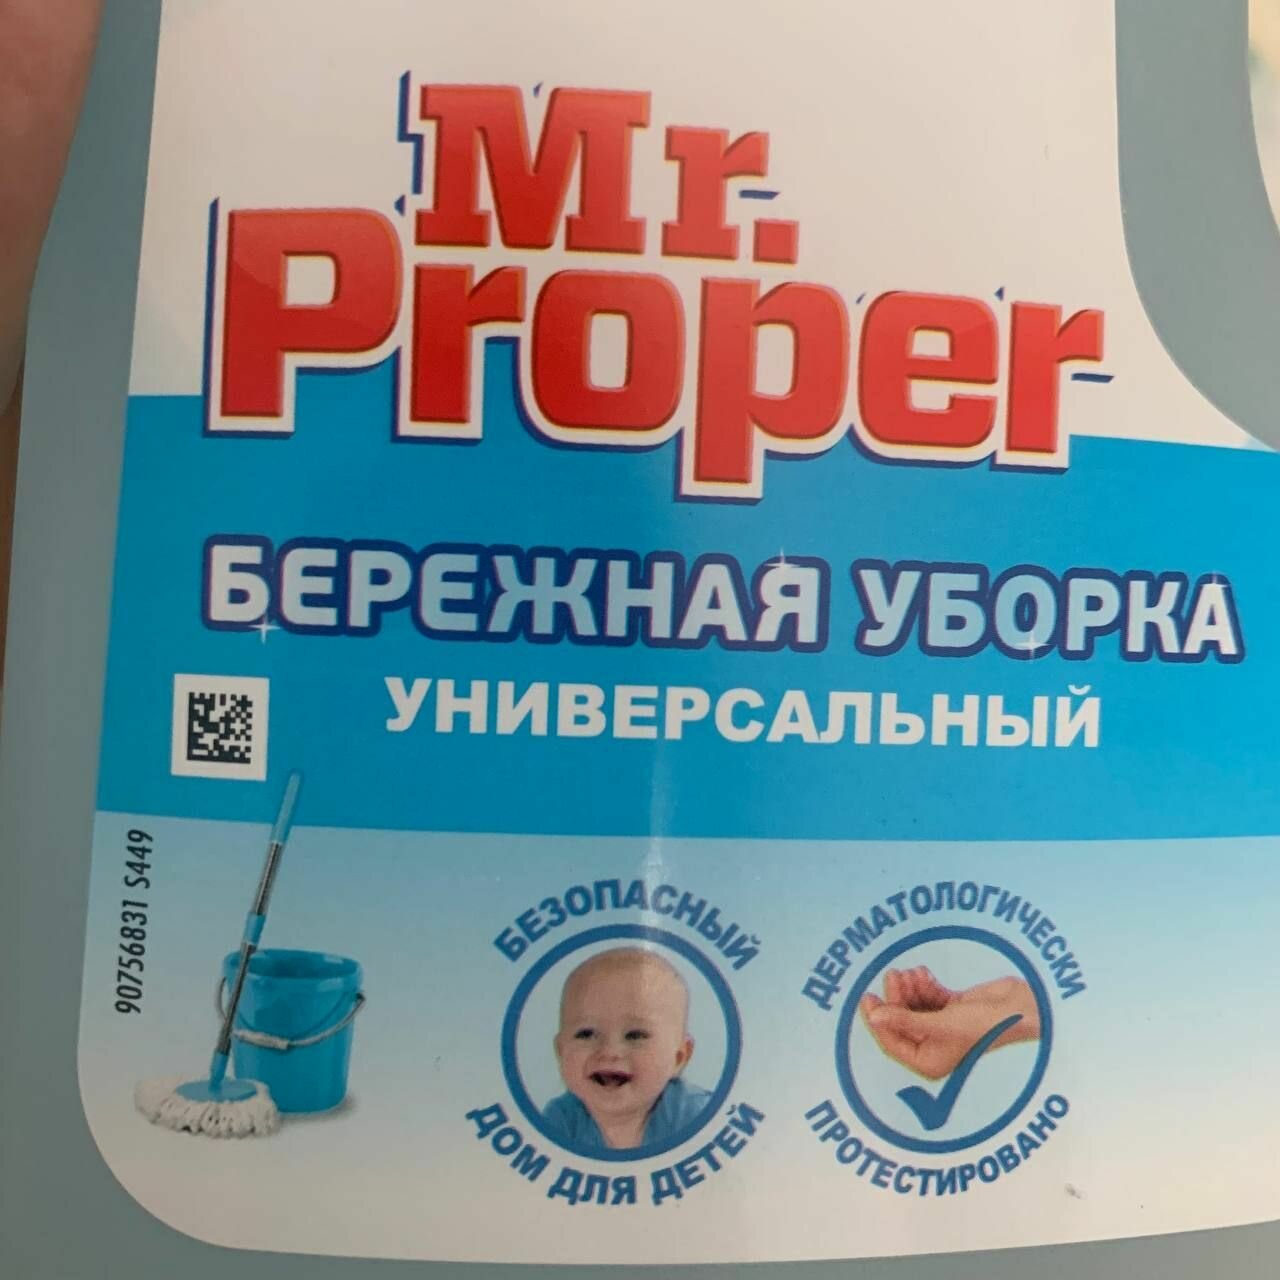 Mr Proper Моющая жидкость для полов и стен Бережная уборка